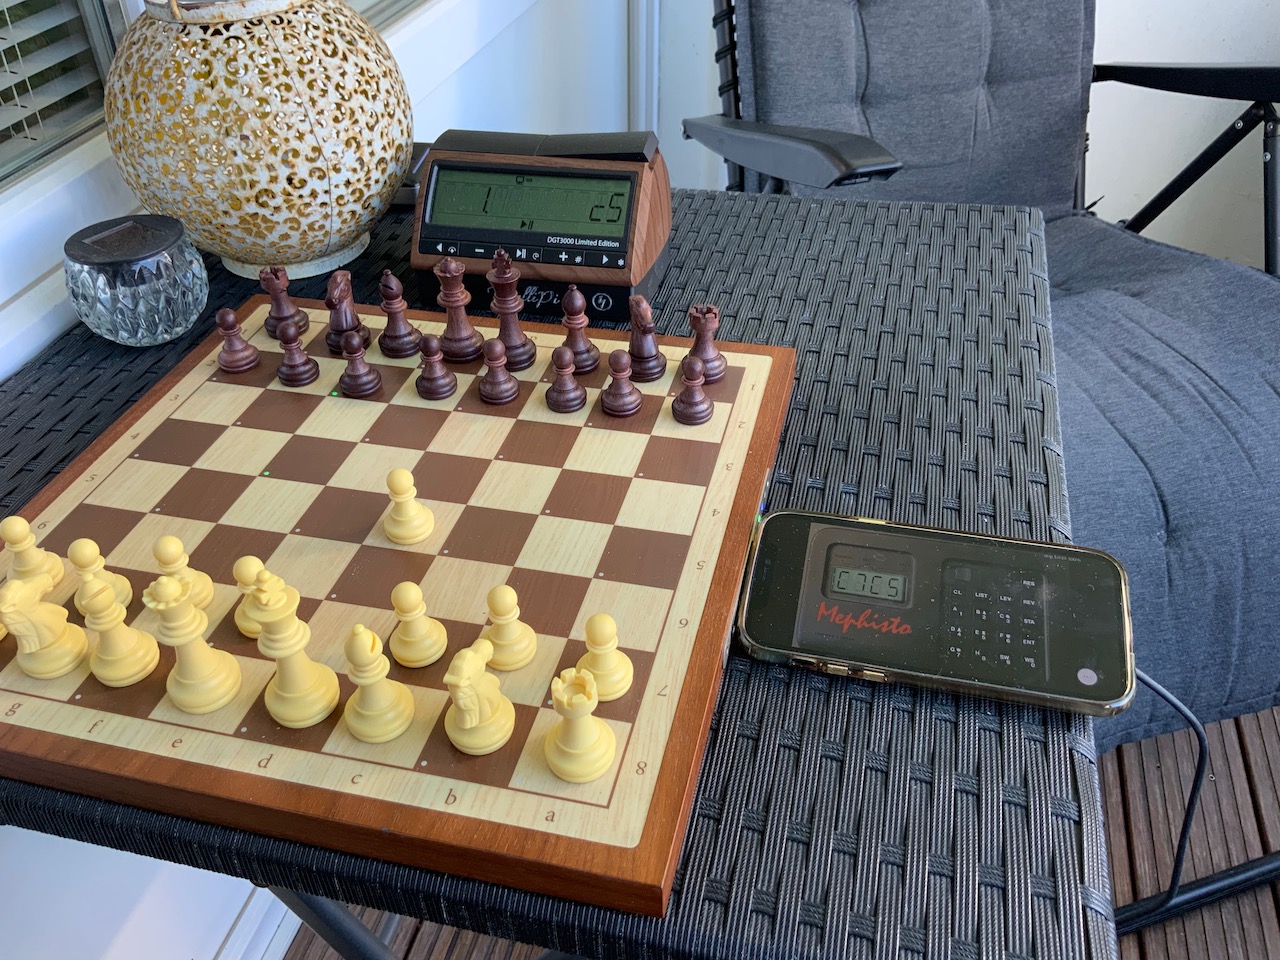 DGT Pi Raspberry Pi Chess Computer + DGT3000 Chess Clock 